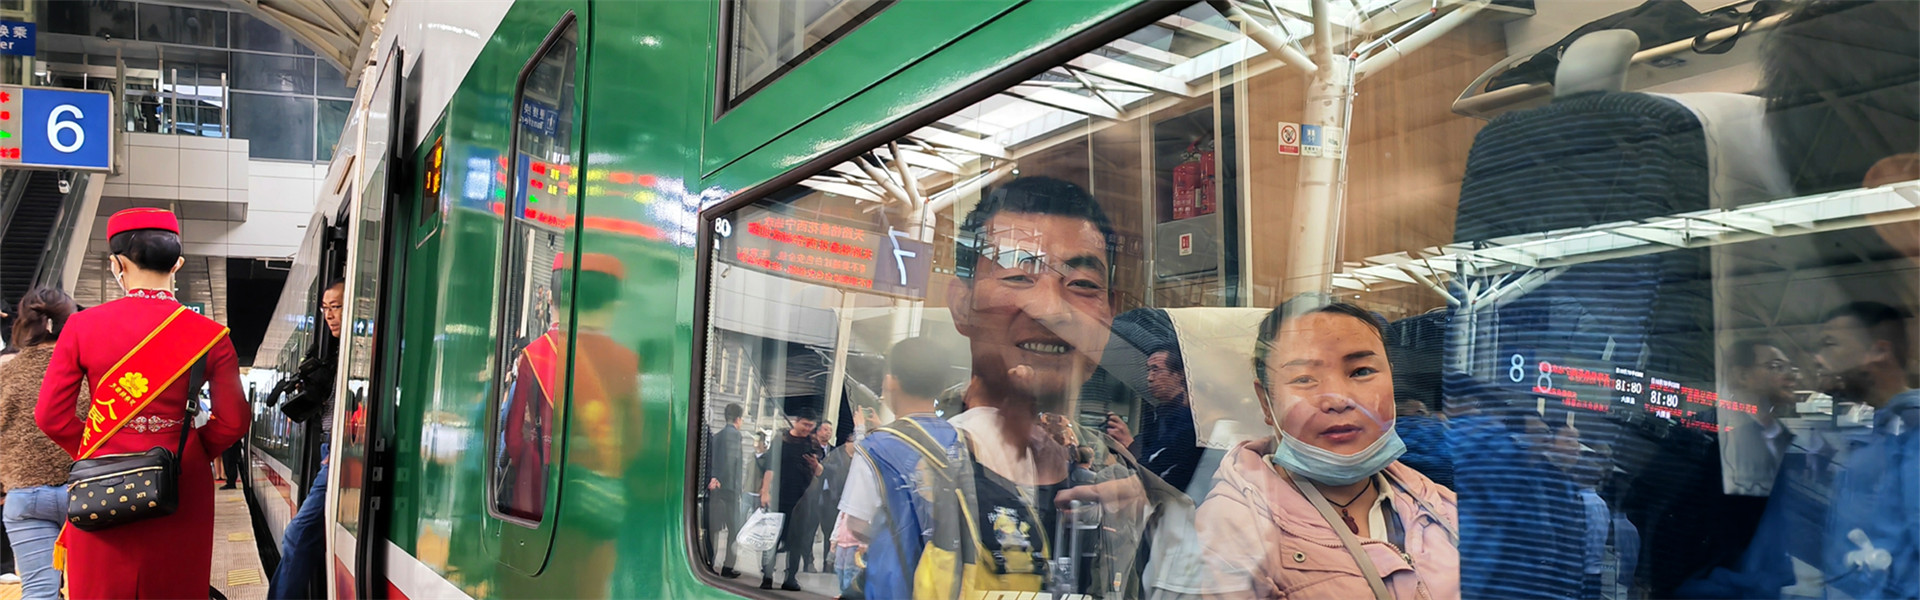 青藏铁路西格段通车40周年 累计发送旅客突破1.1亿人次